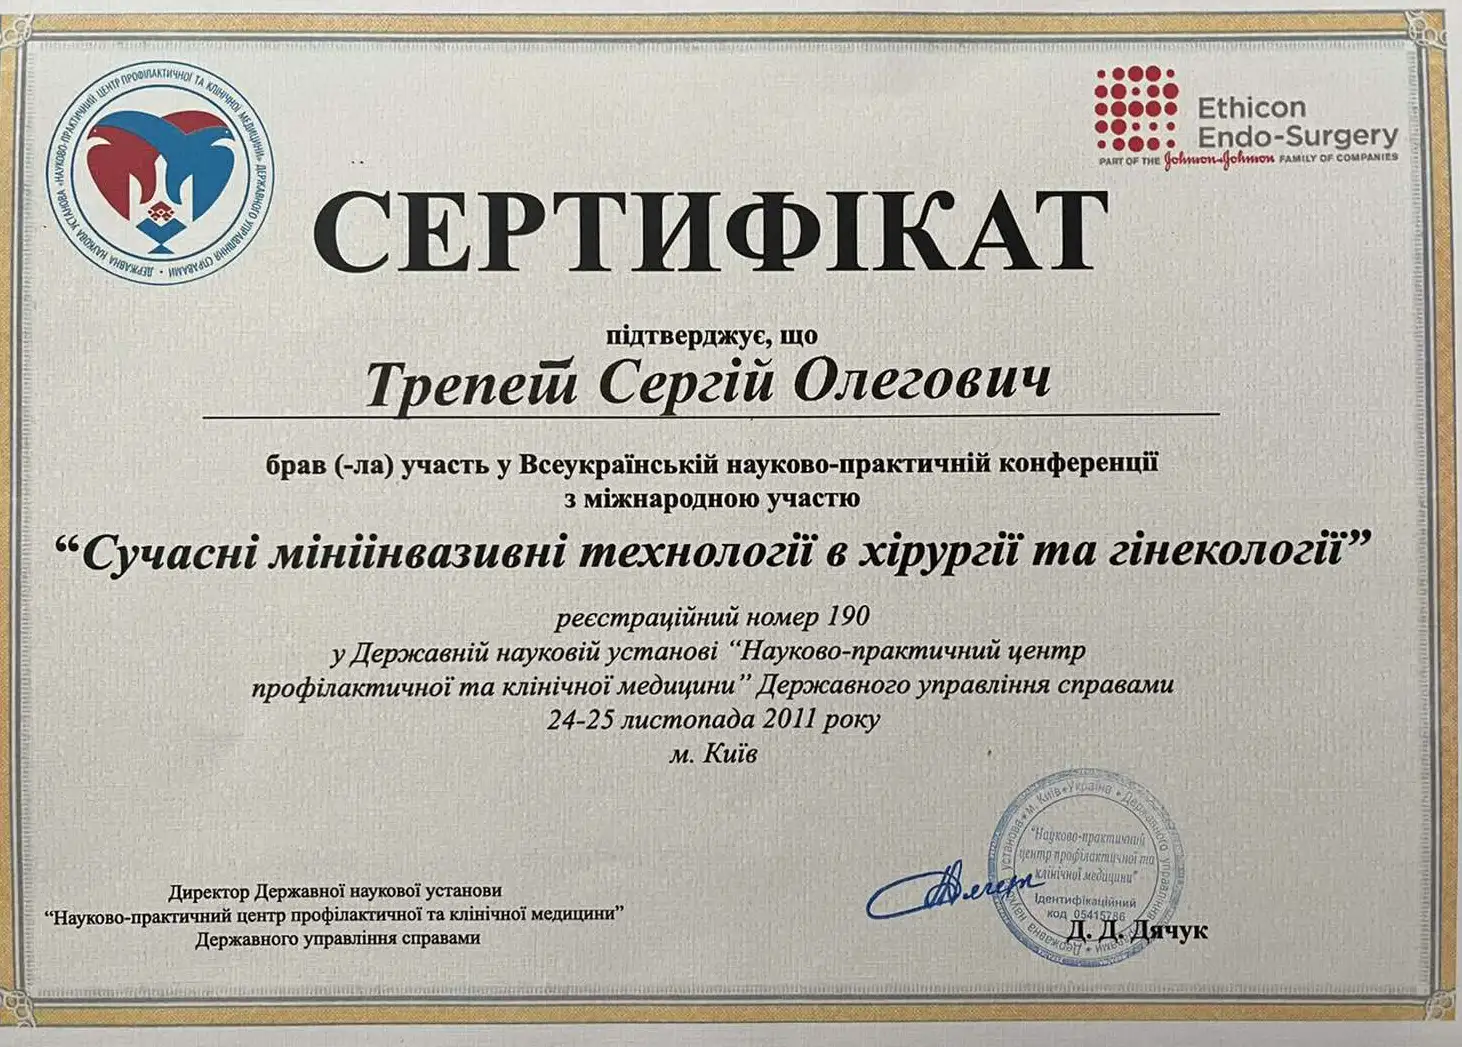 Сертификат «Современные миниинвазивные технологии в хирургии и гинекологии»